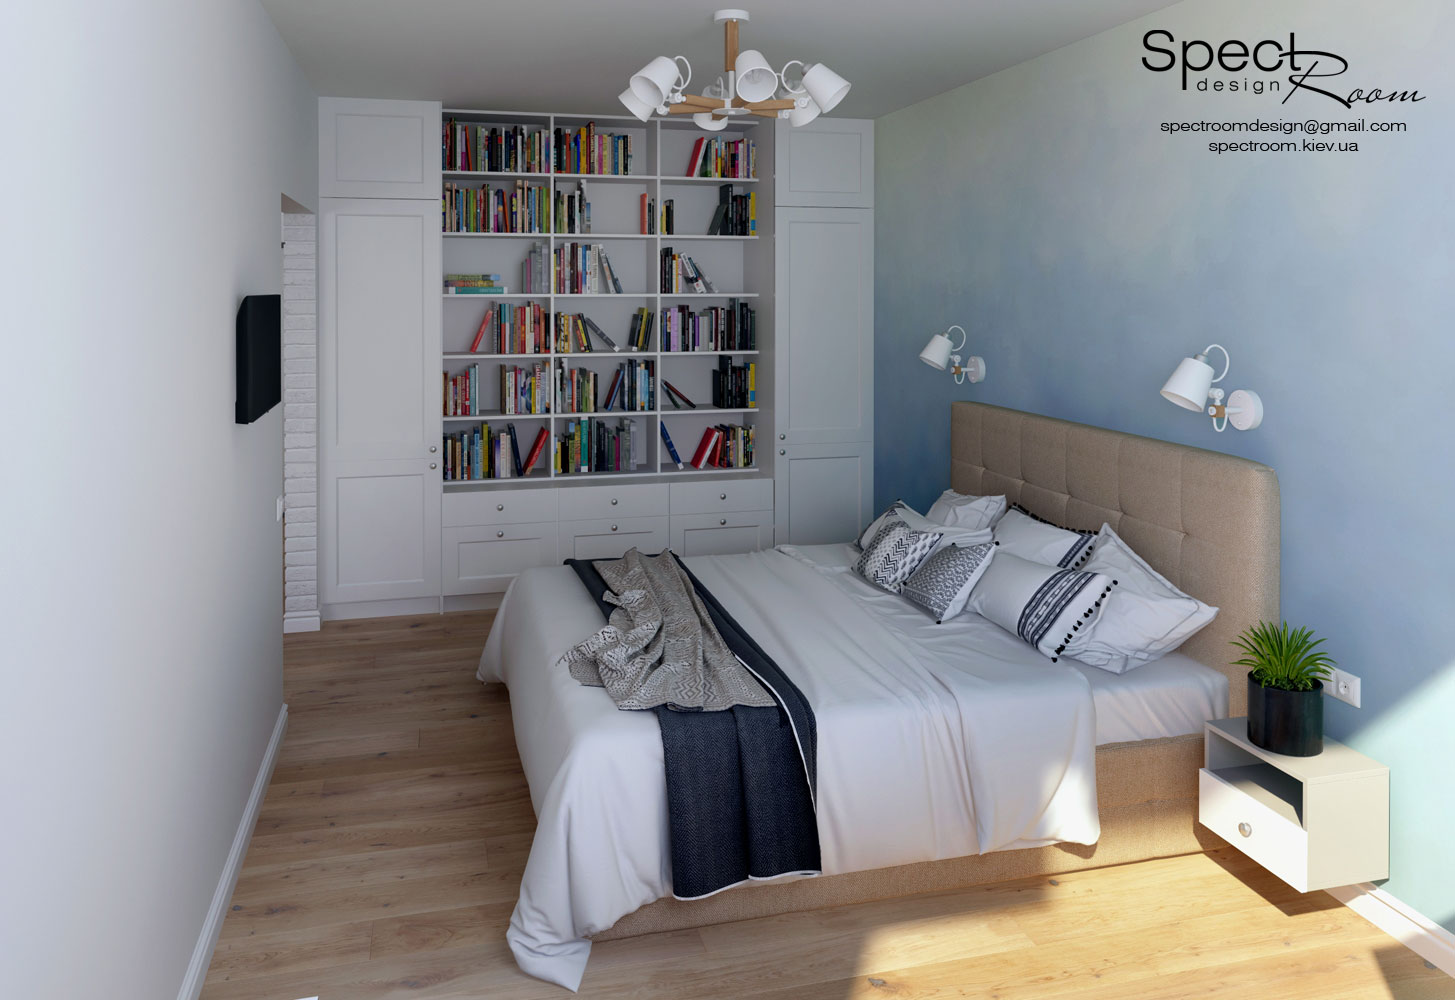 Скандинавський стиль в однокімнатній квартирі  - Spectroom